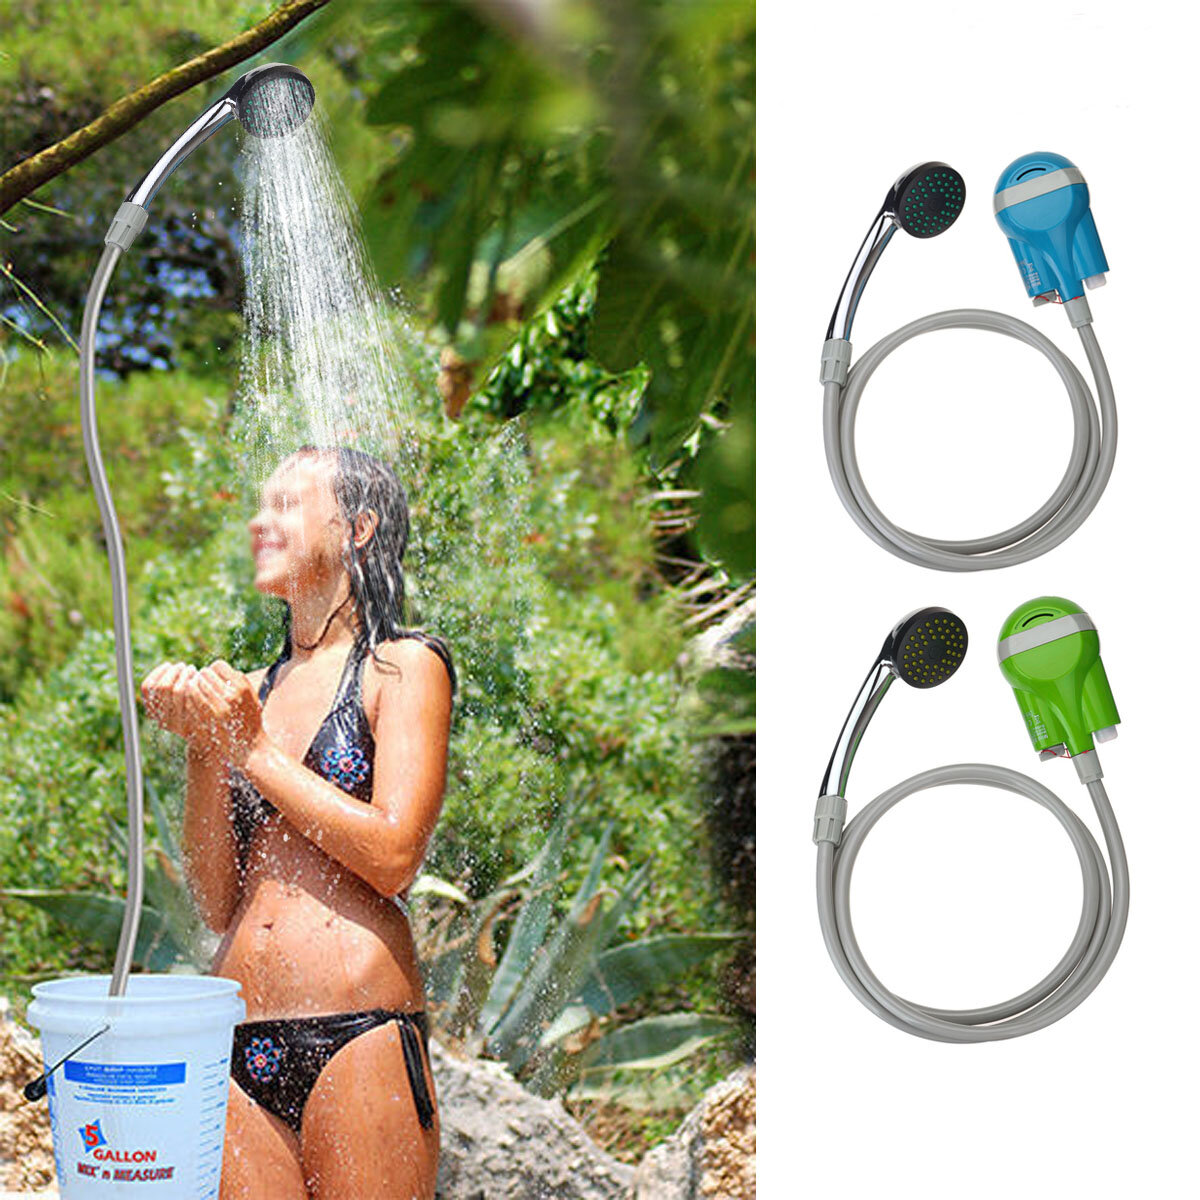 IPRee® Draagbare Douche Waterpomp USB Oplaadbare Nozzle Handheld Water Spary Douche Kraan Camping Caravan Reizen Outdoor Kit